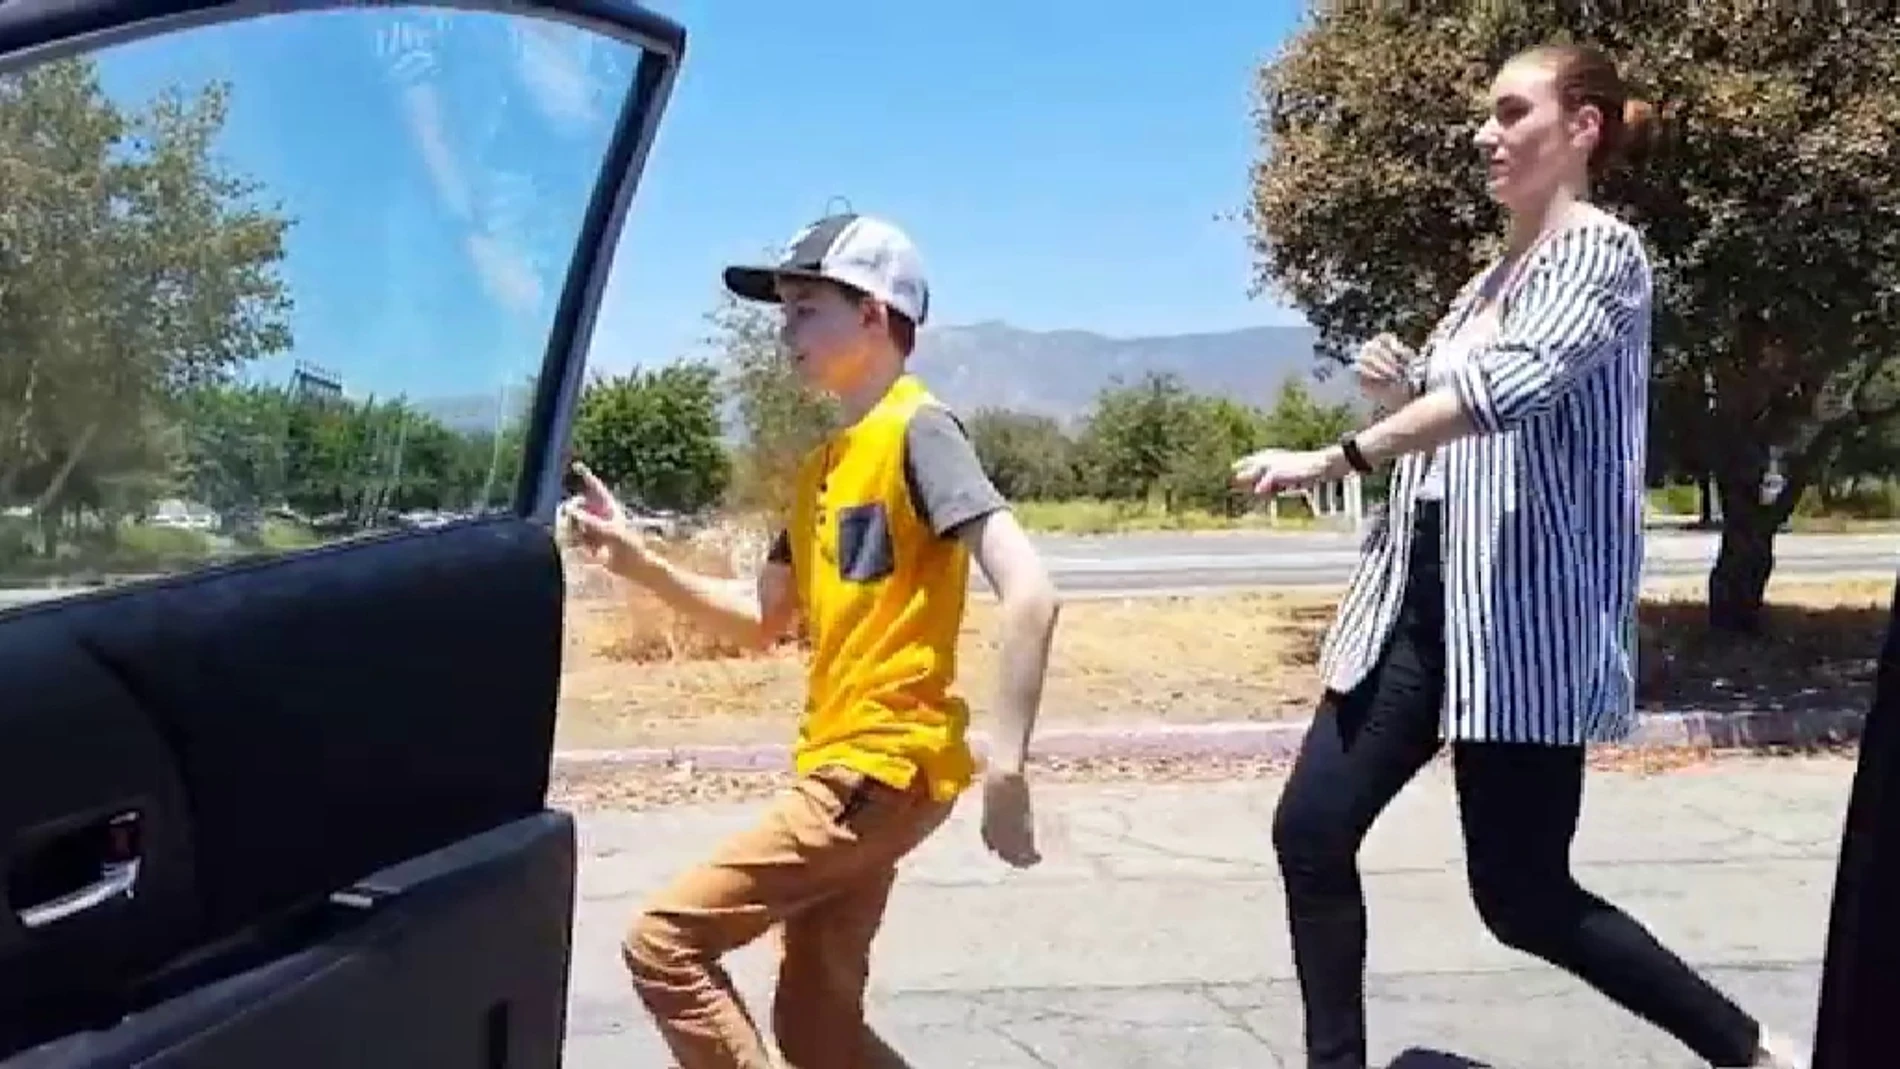 El peligroso nuevo reto viral: bajarse del coche en marcha y bailar